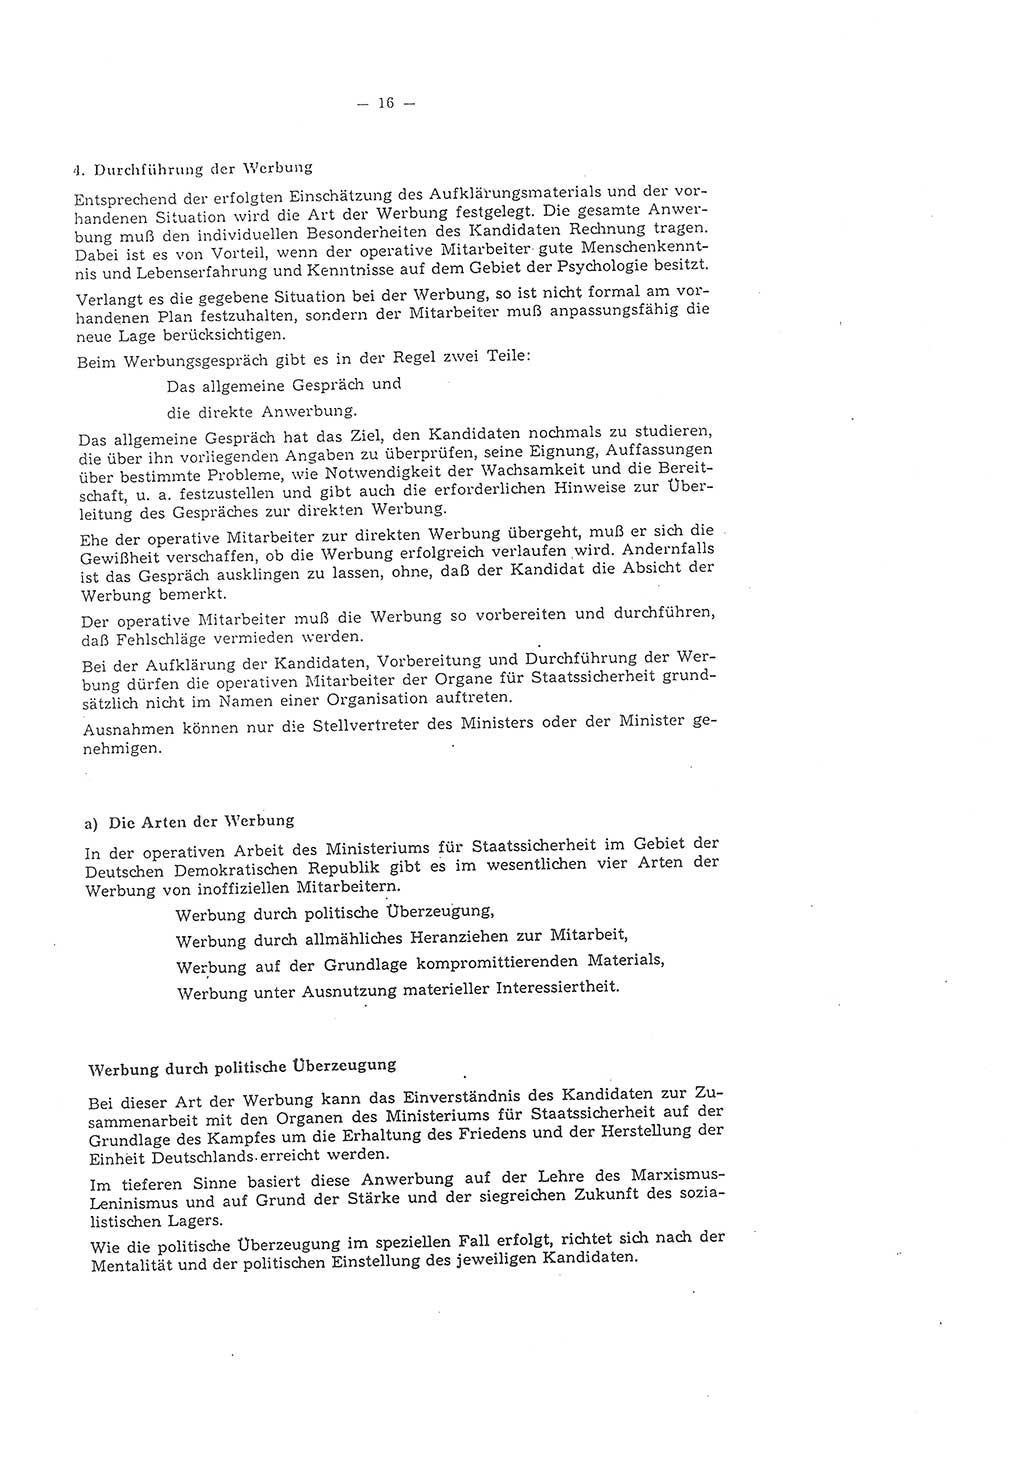 Richtlinie 1/58 für die Arbeit mit inoffiziellen Mitarbeitern im Gebiet der Deutschen Demokratischen Republik (DDR), Ministerium für Staatssicherheit (MfS), Der Minister (Mielke), Geheime Verschlußsache (GVS) 1336/58, Berlin 1958, Seite 16 (RL 1/58 DDR MfS Min. GVS 1336/58 1958, S. 16)